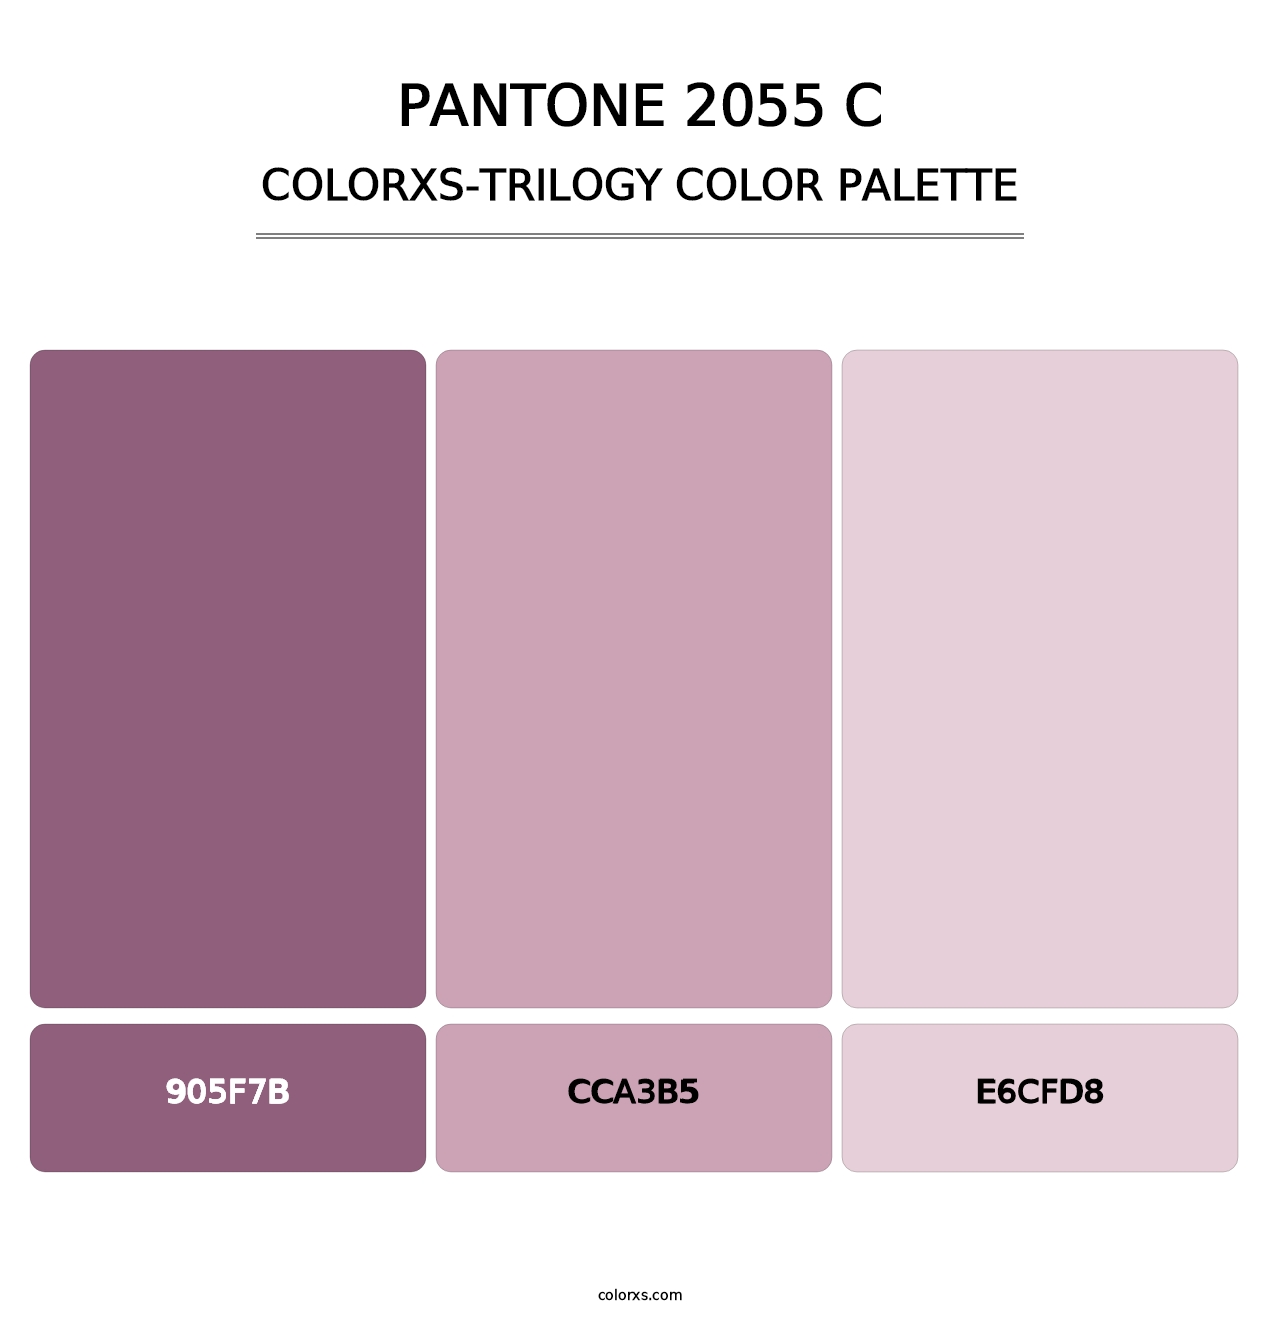 PANTONE 2055 C - Colorxs Trilogy Palette